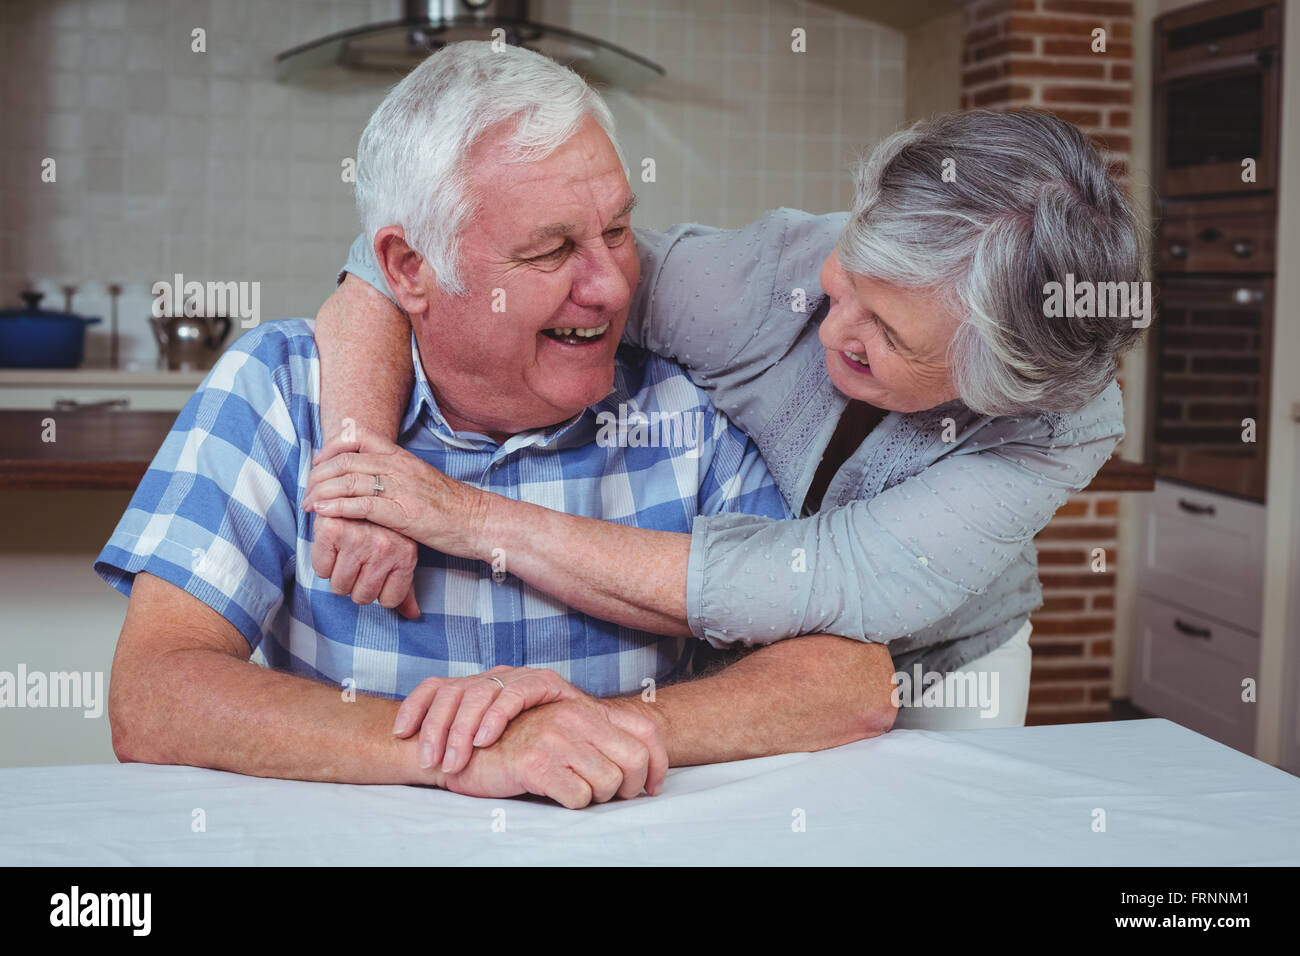 Romantische älteres paar umfassend in Küche Stockfoto